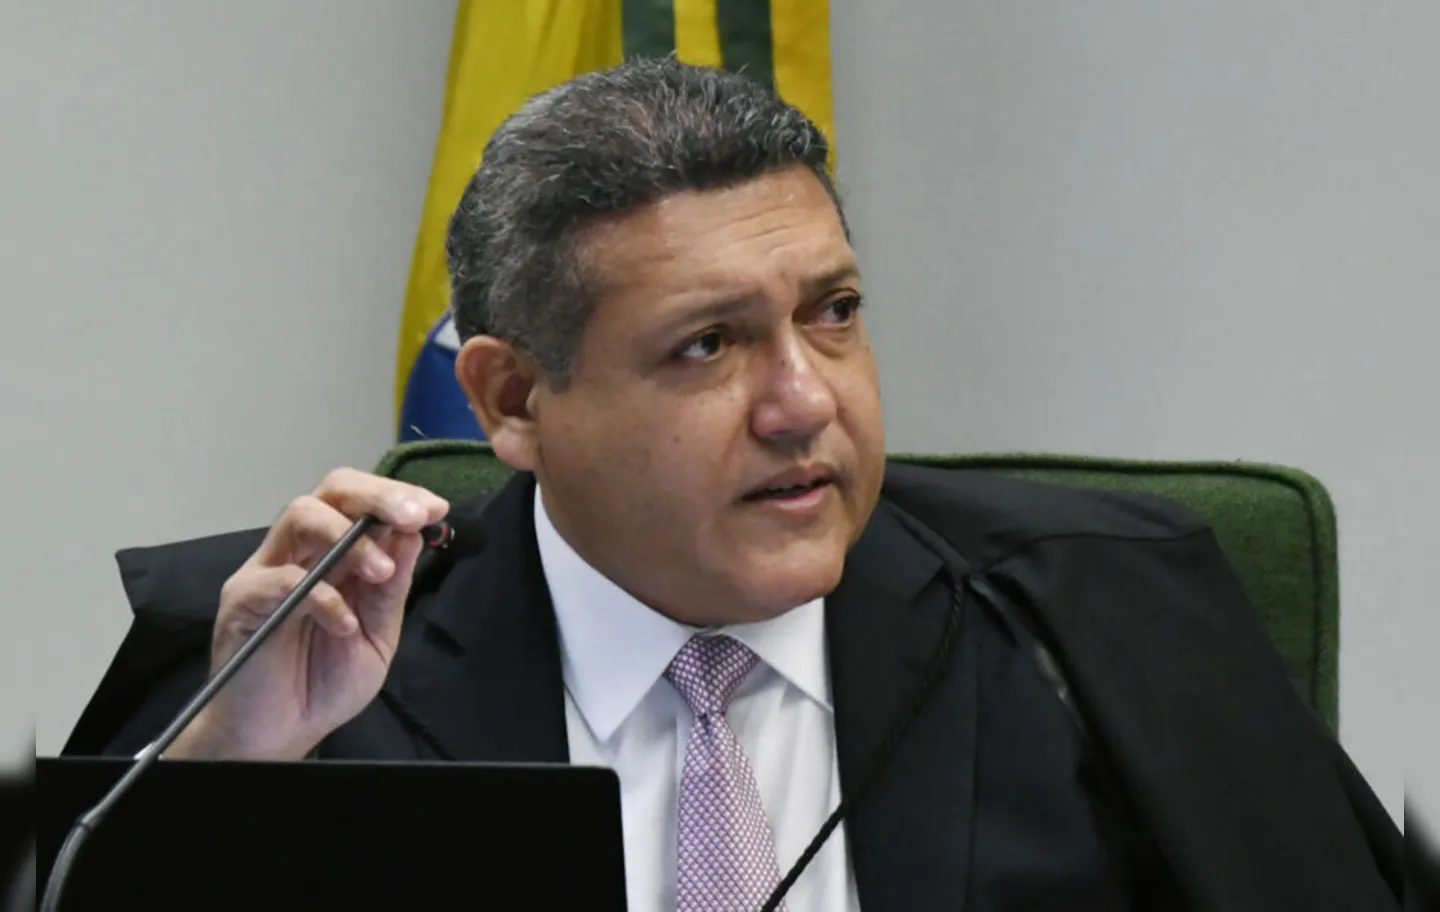 O ministro Kássio Nunes Marques foi indicado por Bolsonaro ao STF